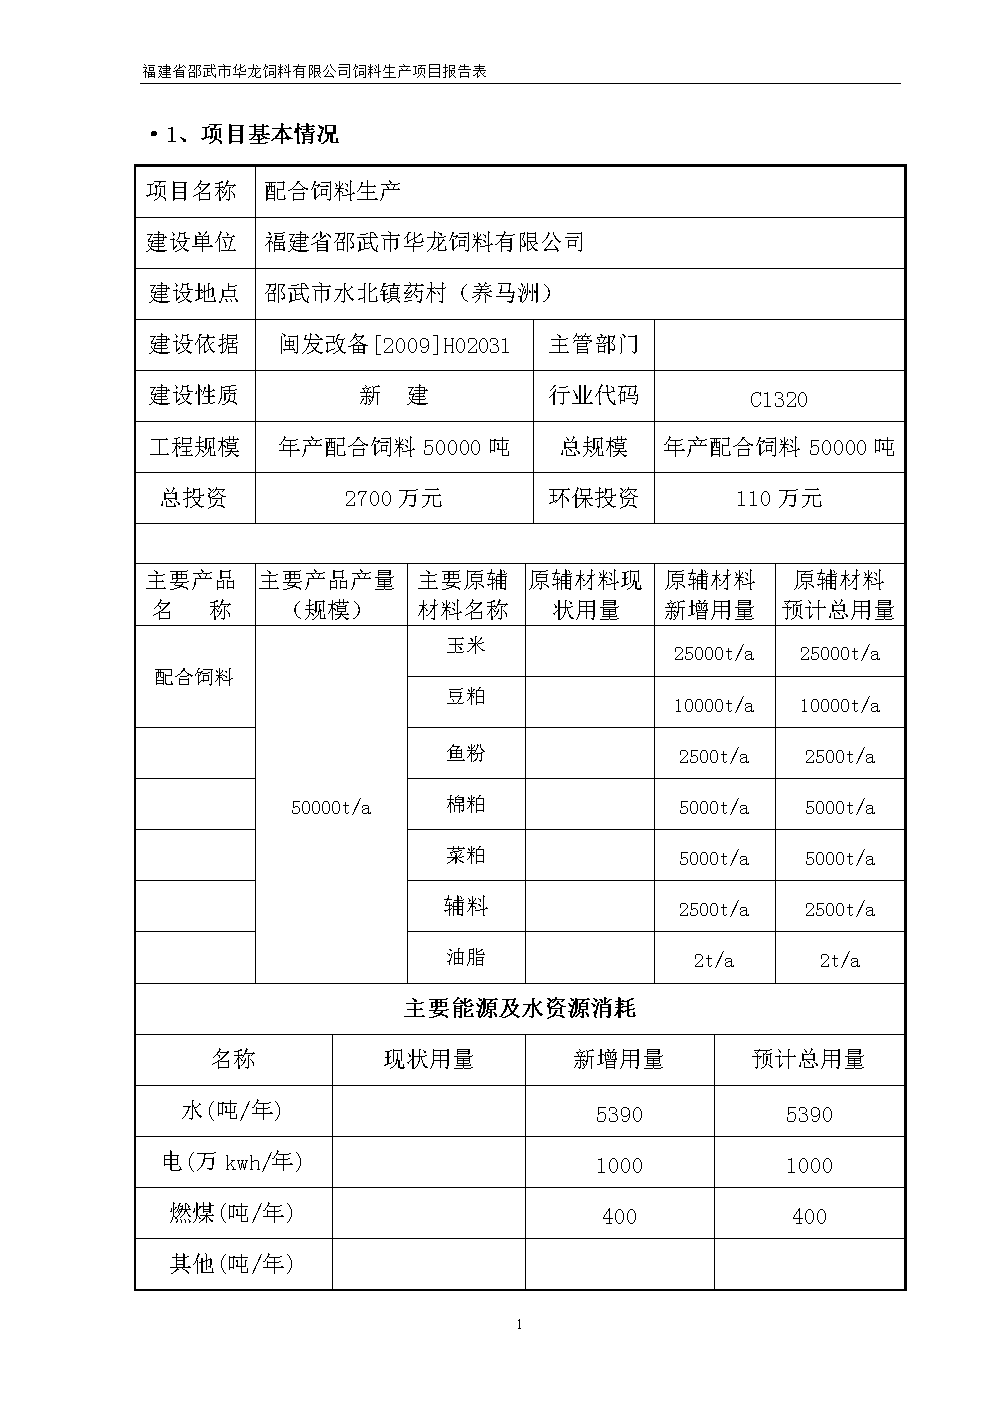 福建省饲料工业公司预算报告配图